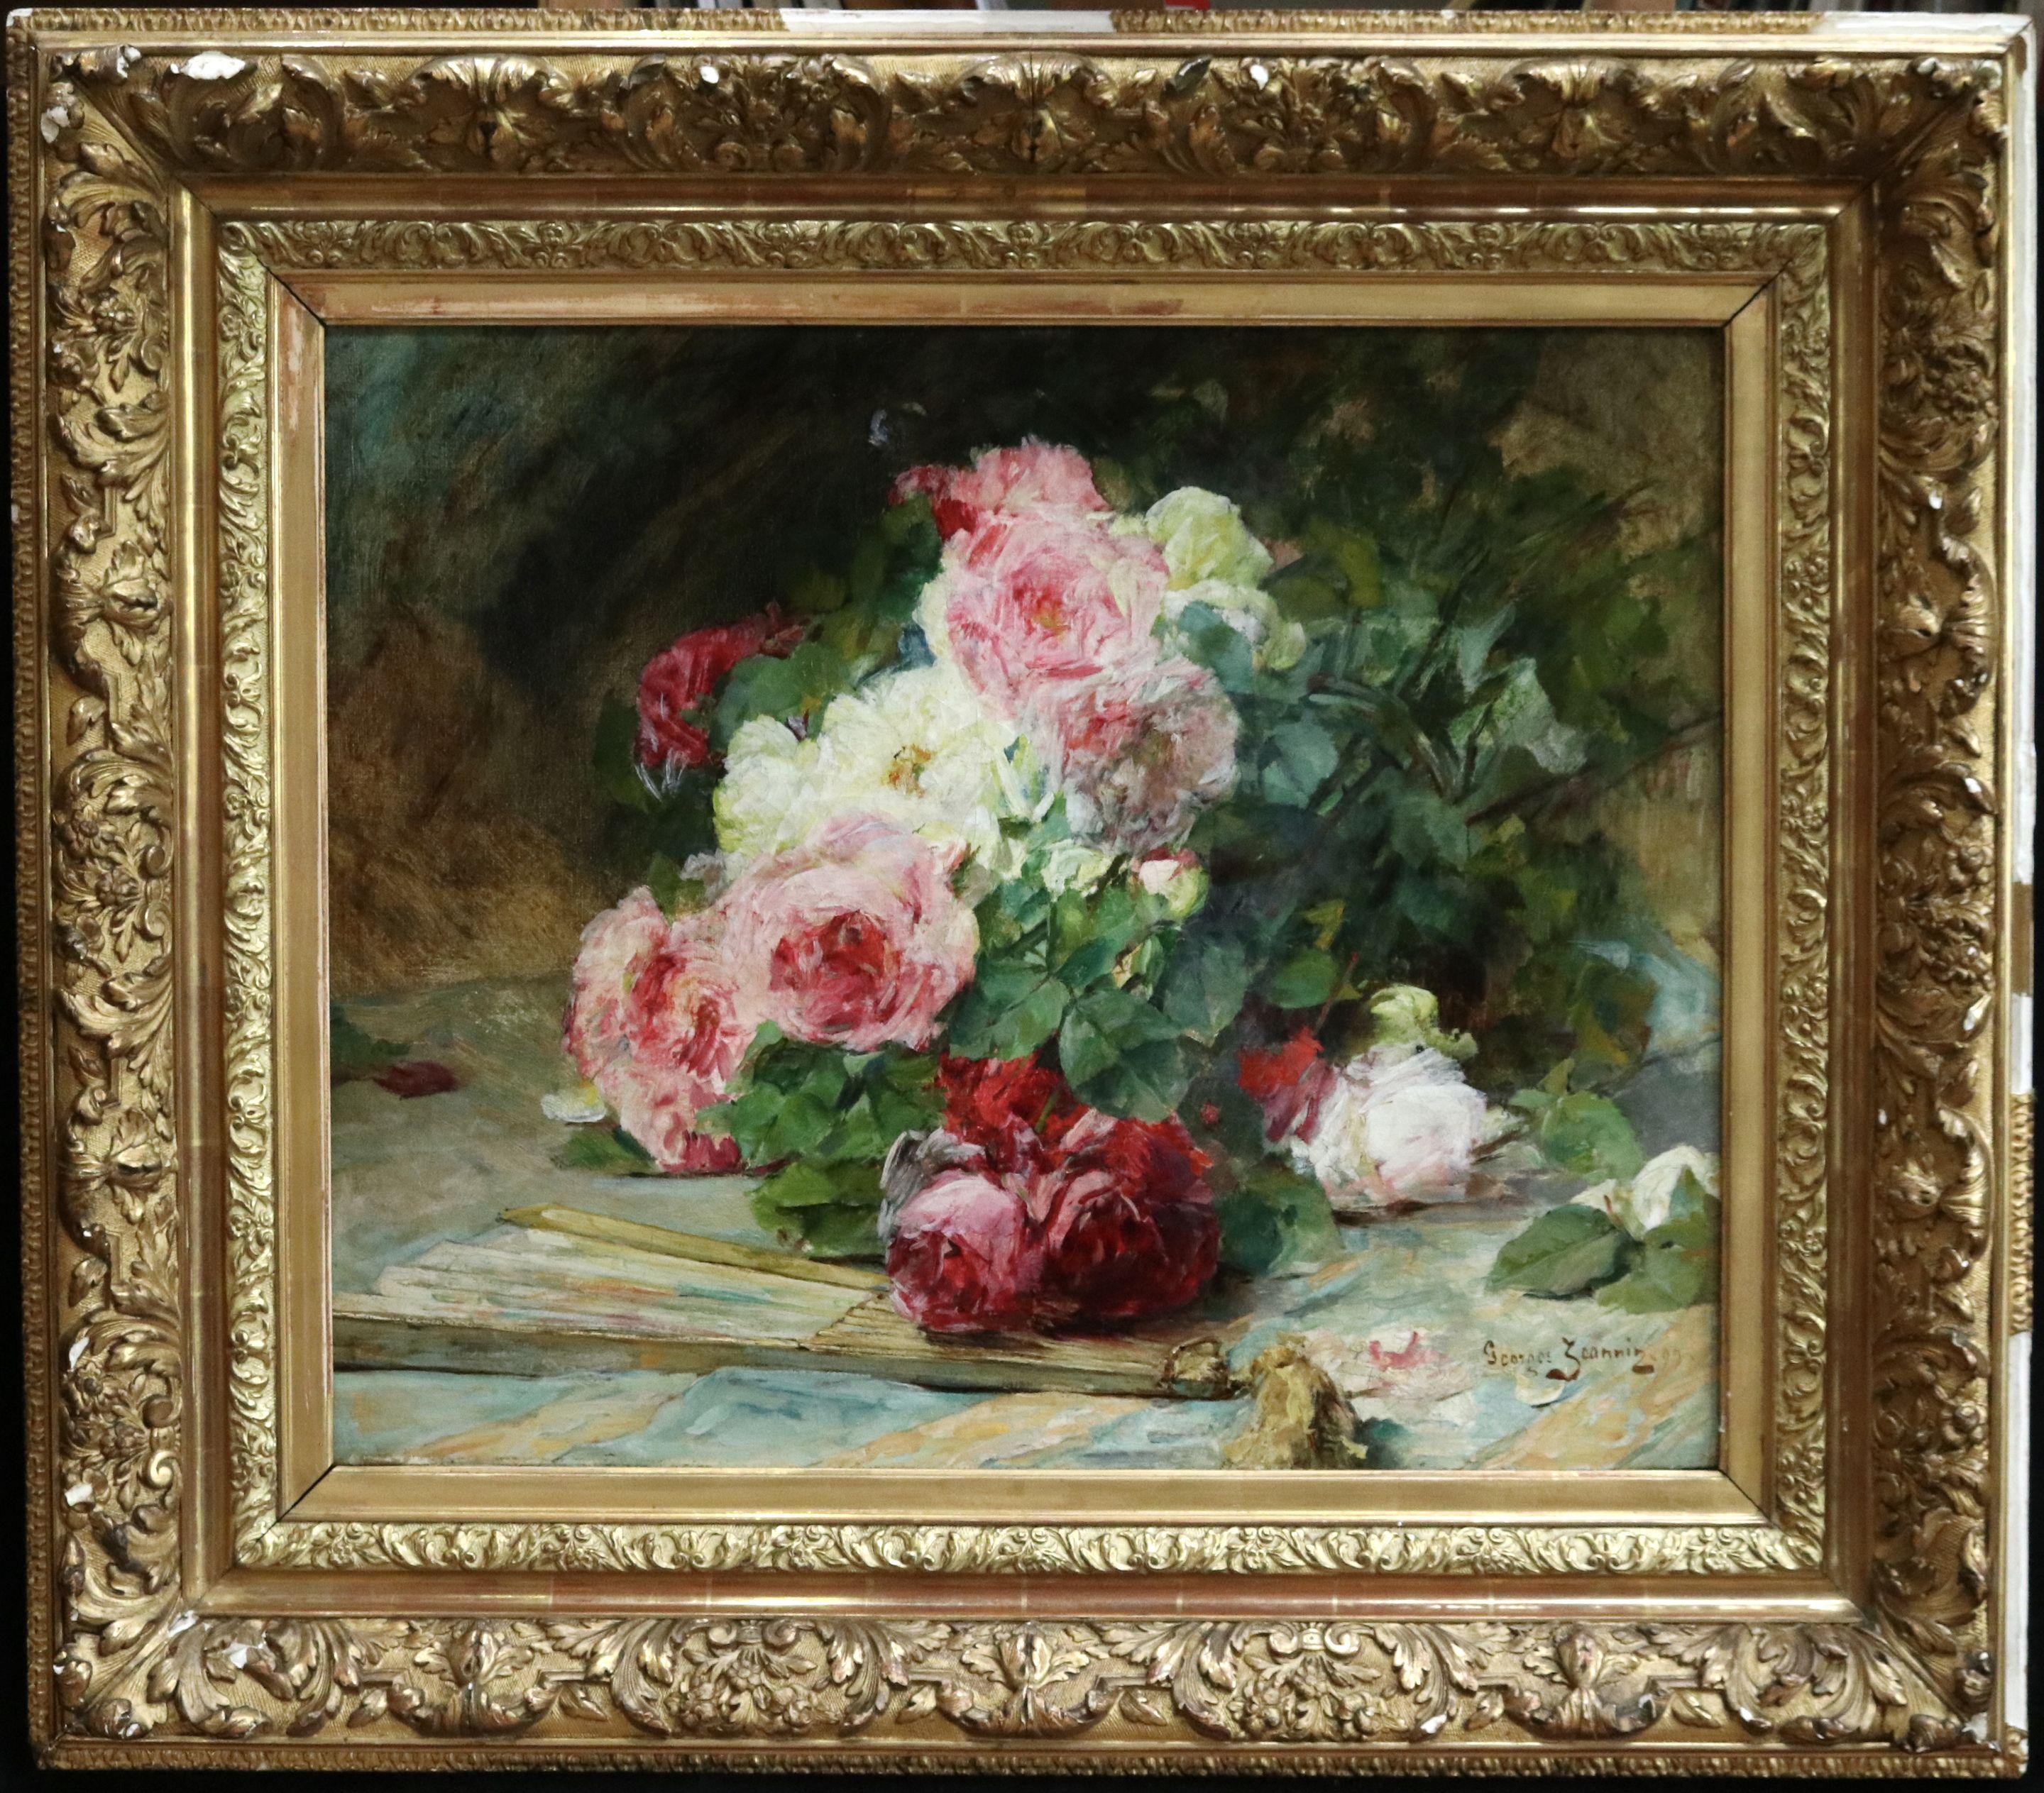 Signiertes und datiertes impressionistisches Stillleben in Öl auf Original-Leinwand des französischen Malers Georges Jeannin. Das Werk zeigt einen Strauß rosa, weißer und roter Rosen, vor dem ein Papierfächer steht. 

Unterschrift:
Signiert unten